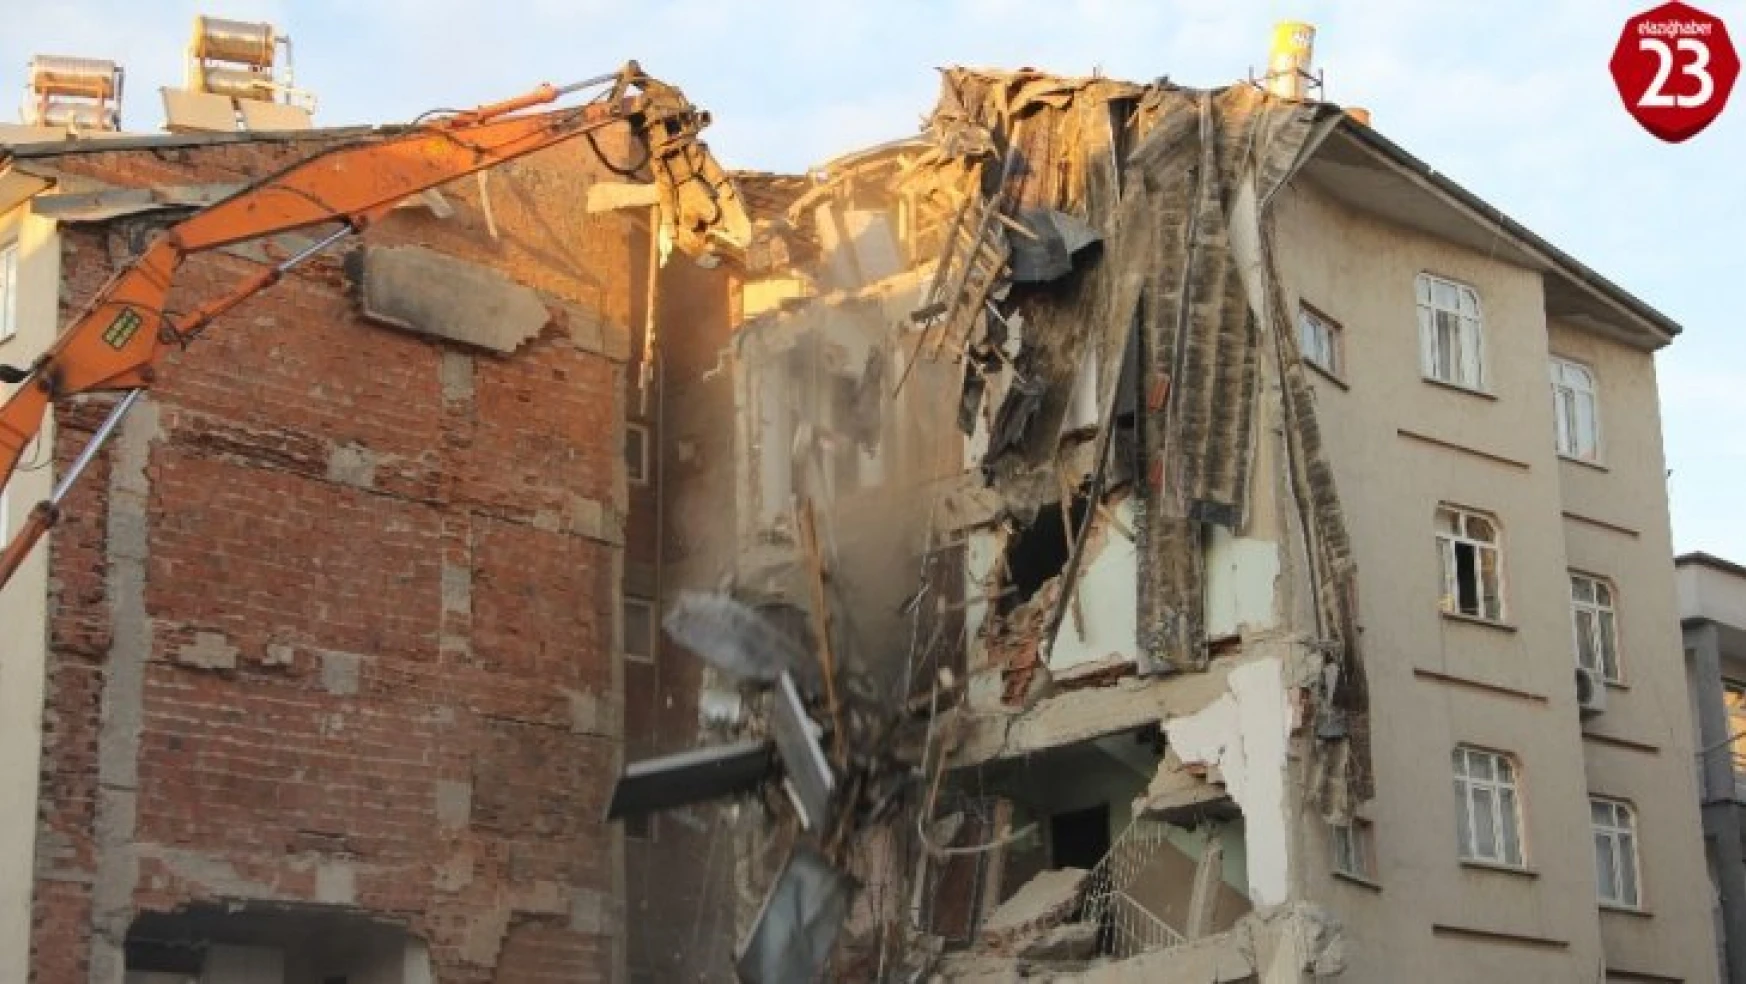 Elazığ'da 11 kişinin öldüğü 2 binanın enkazı kaldırılıyor